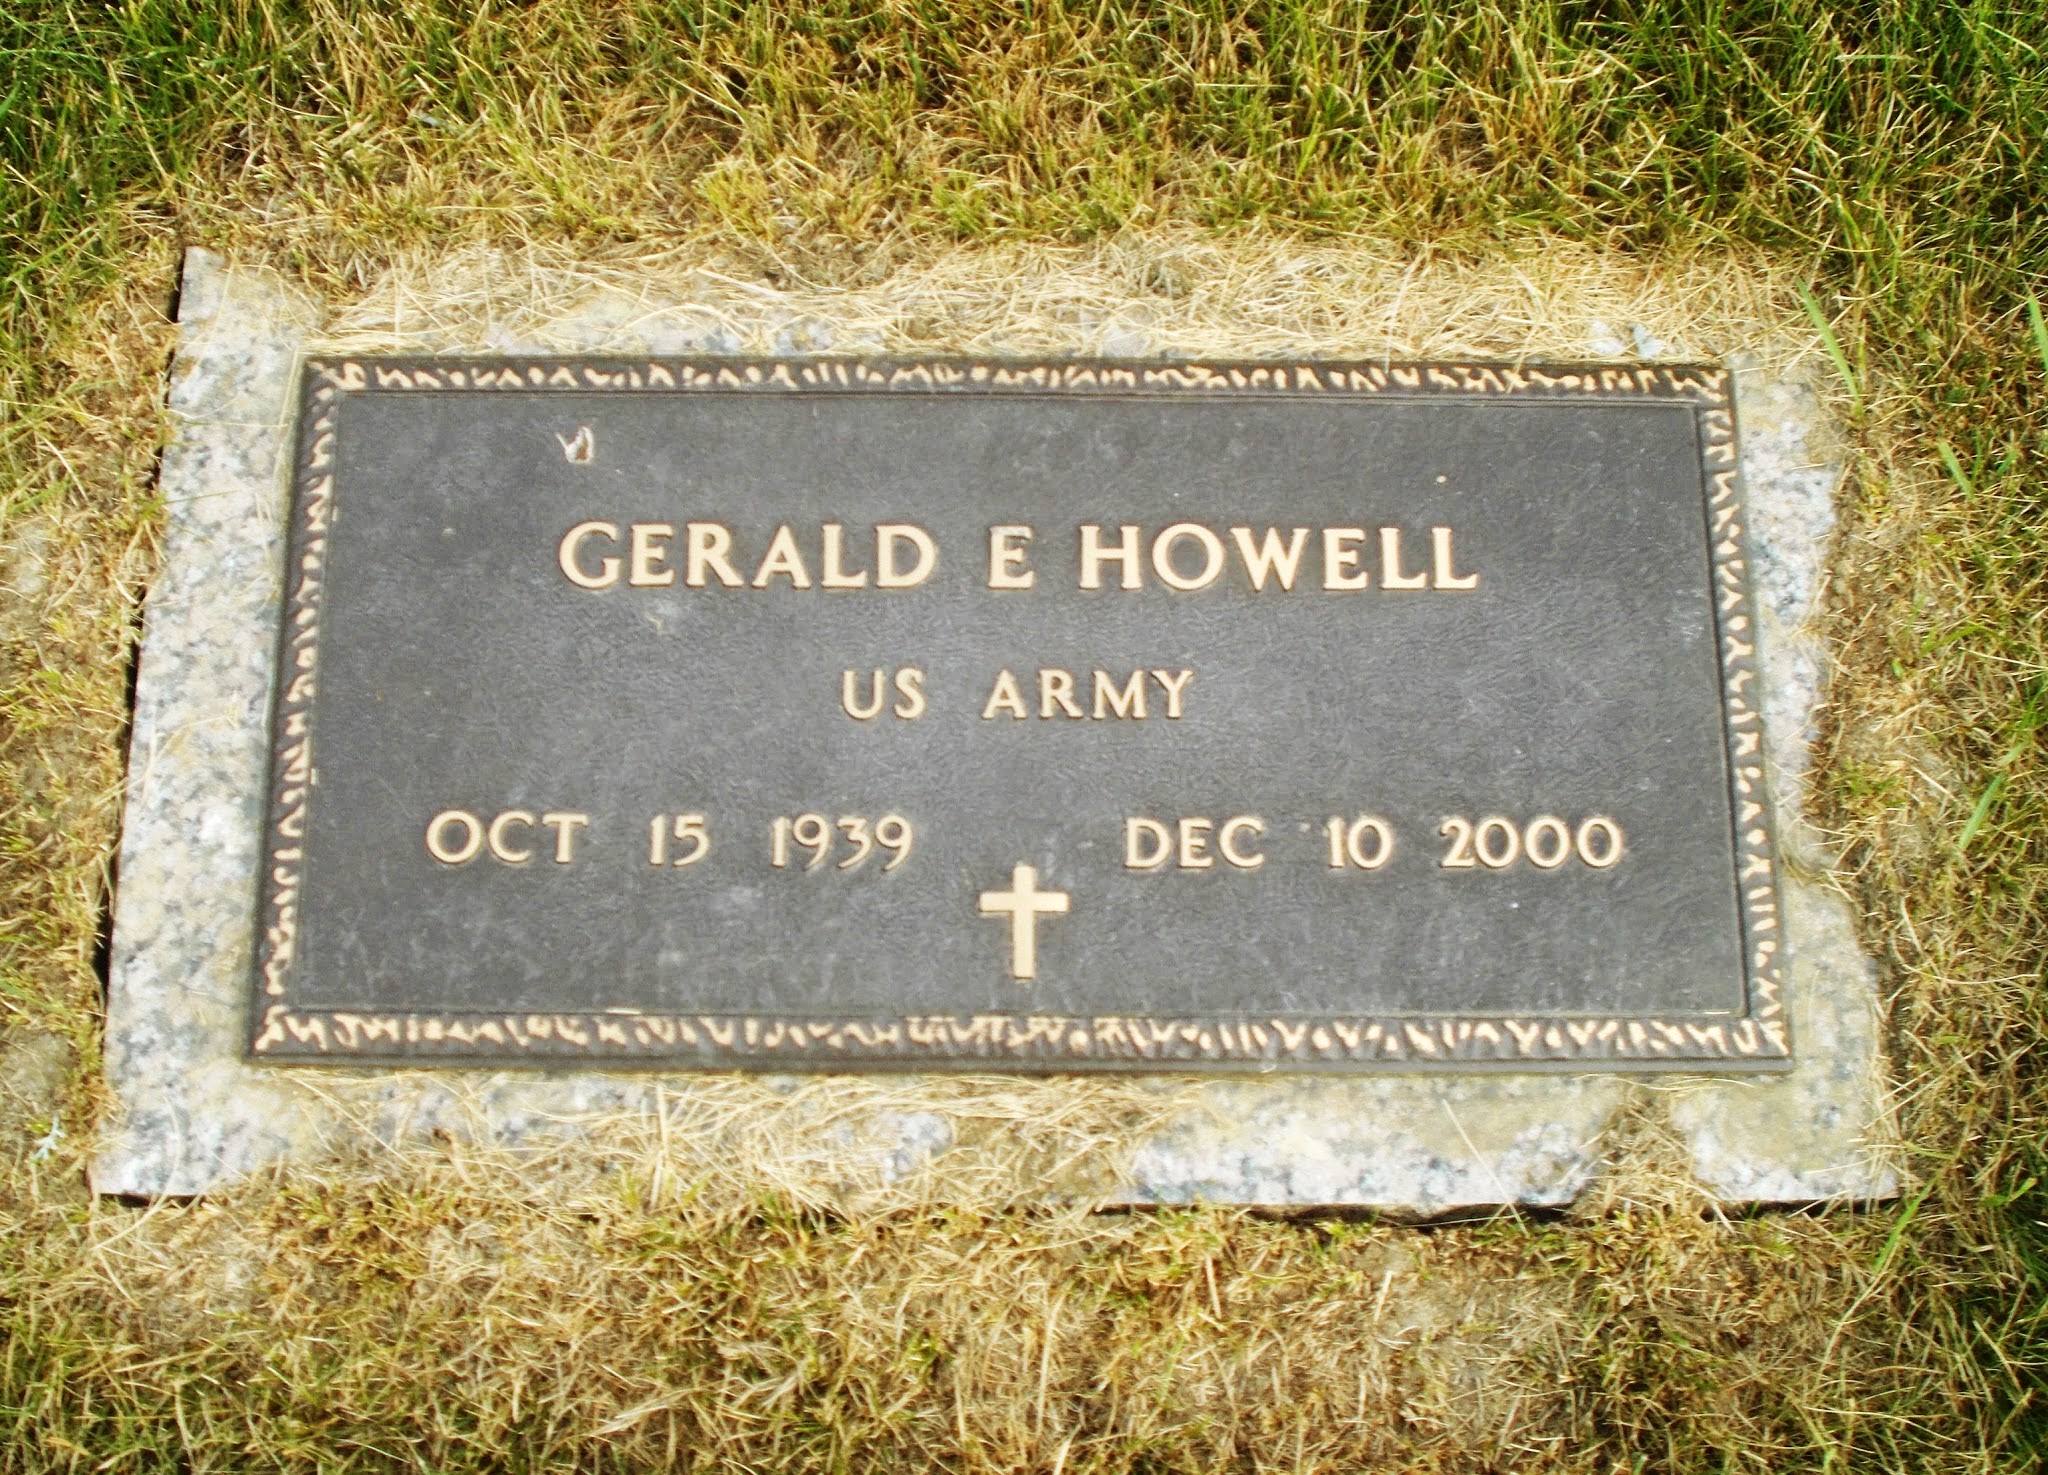 Gerald E Howell